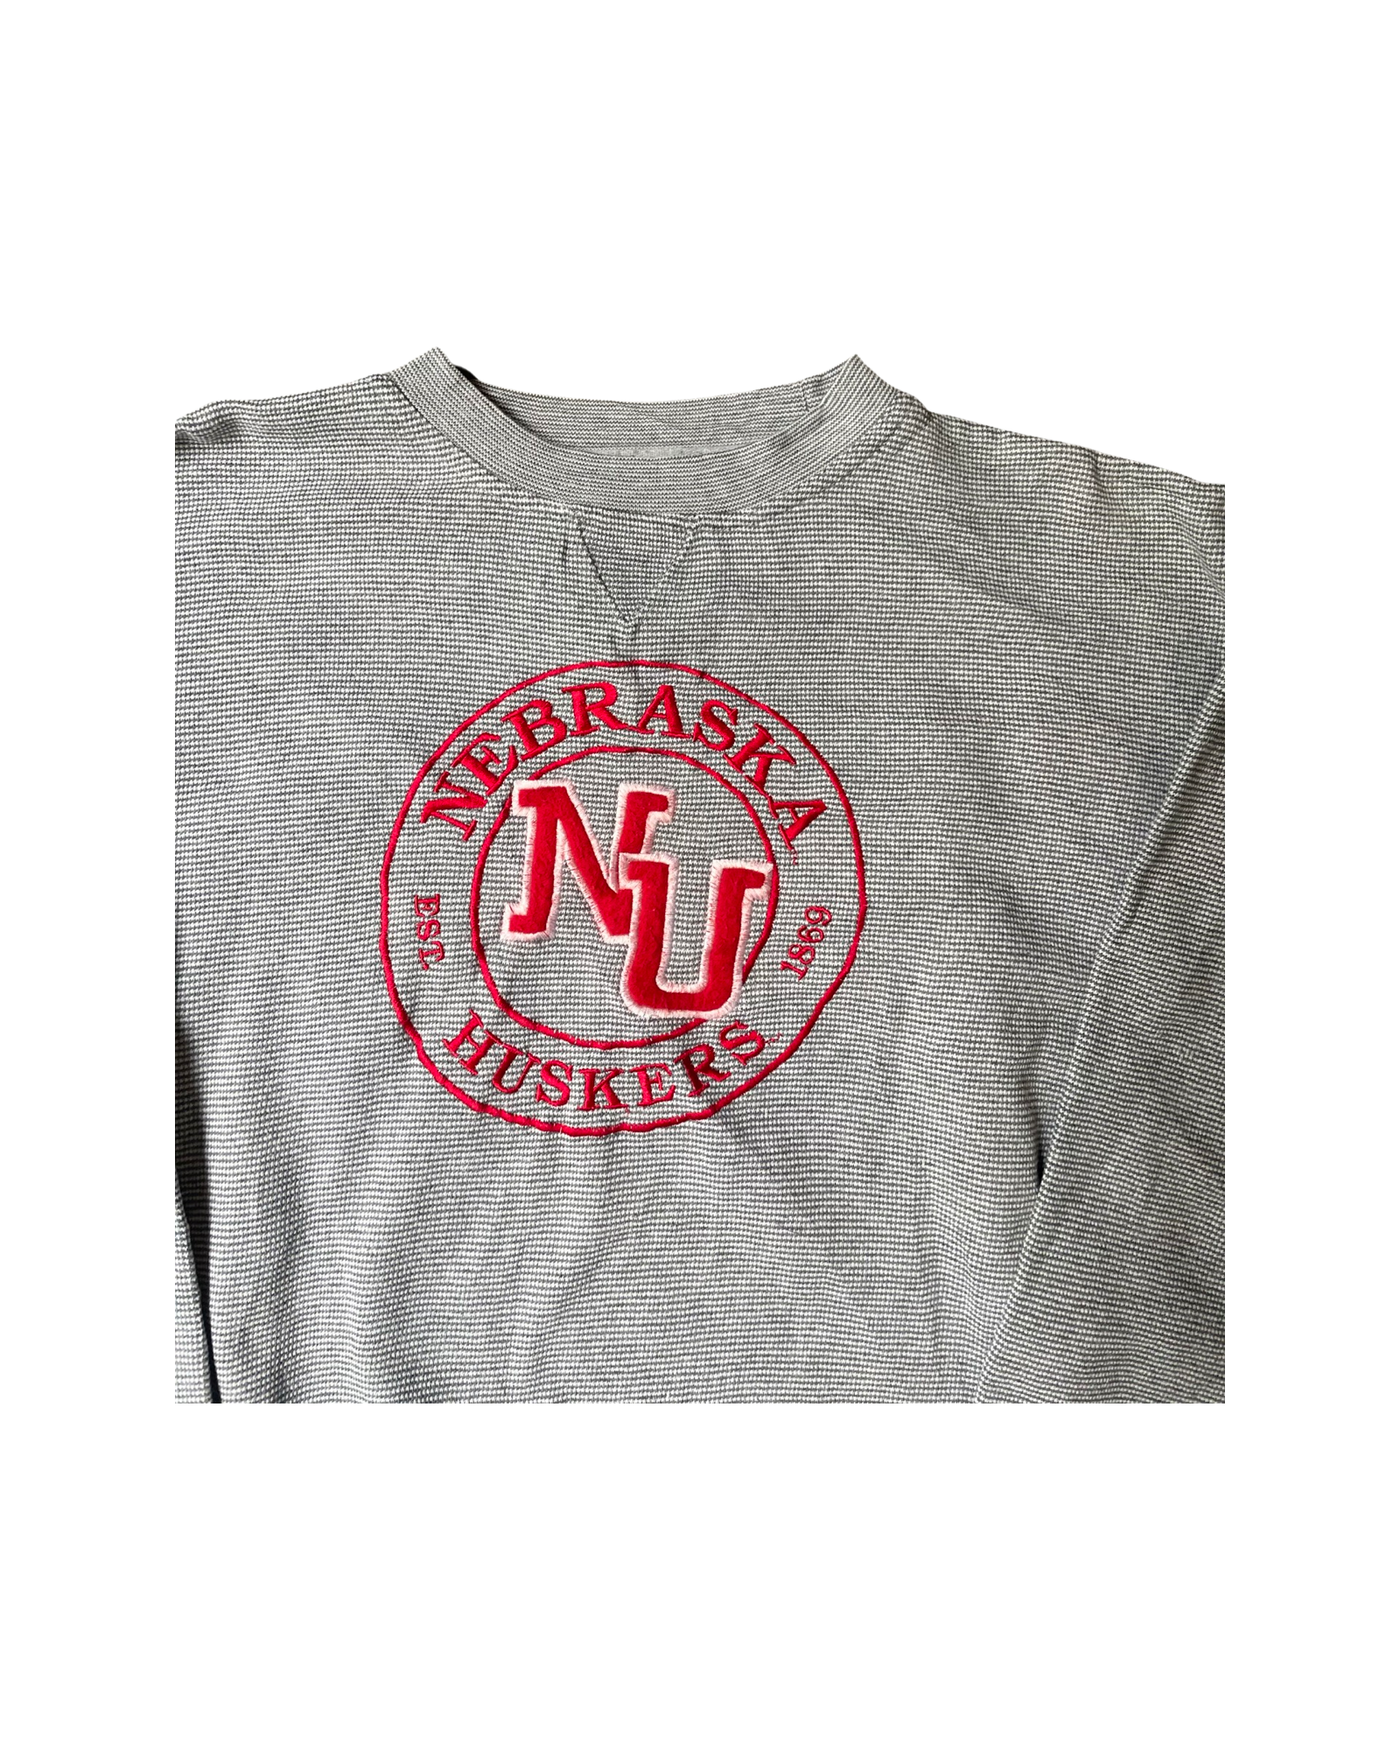 Vintage Nebraska Huskers Crew Neck Jumper Size L